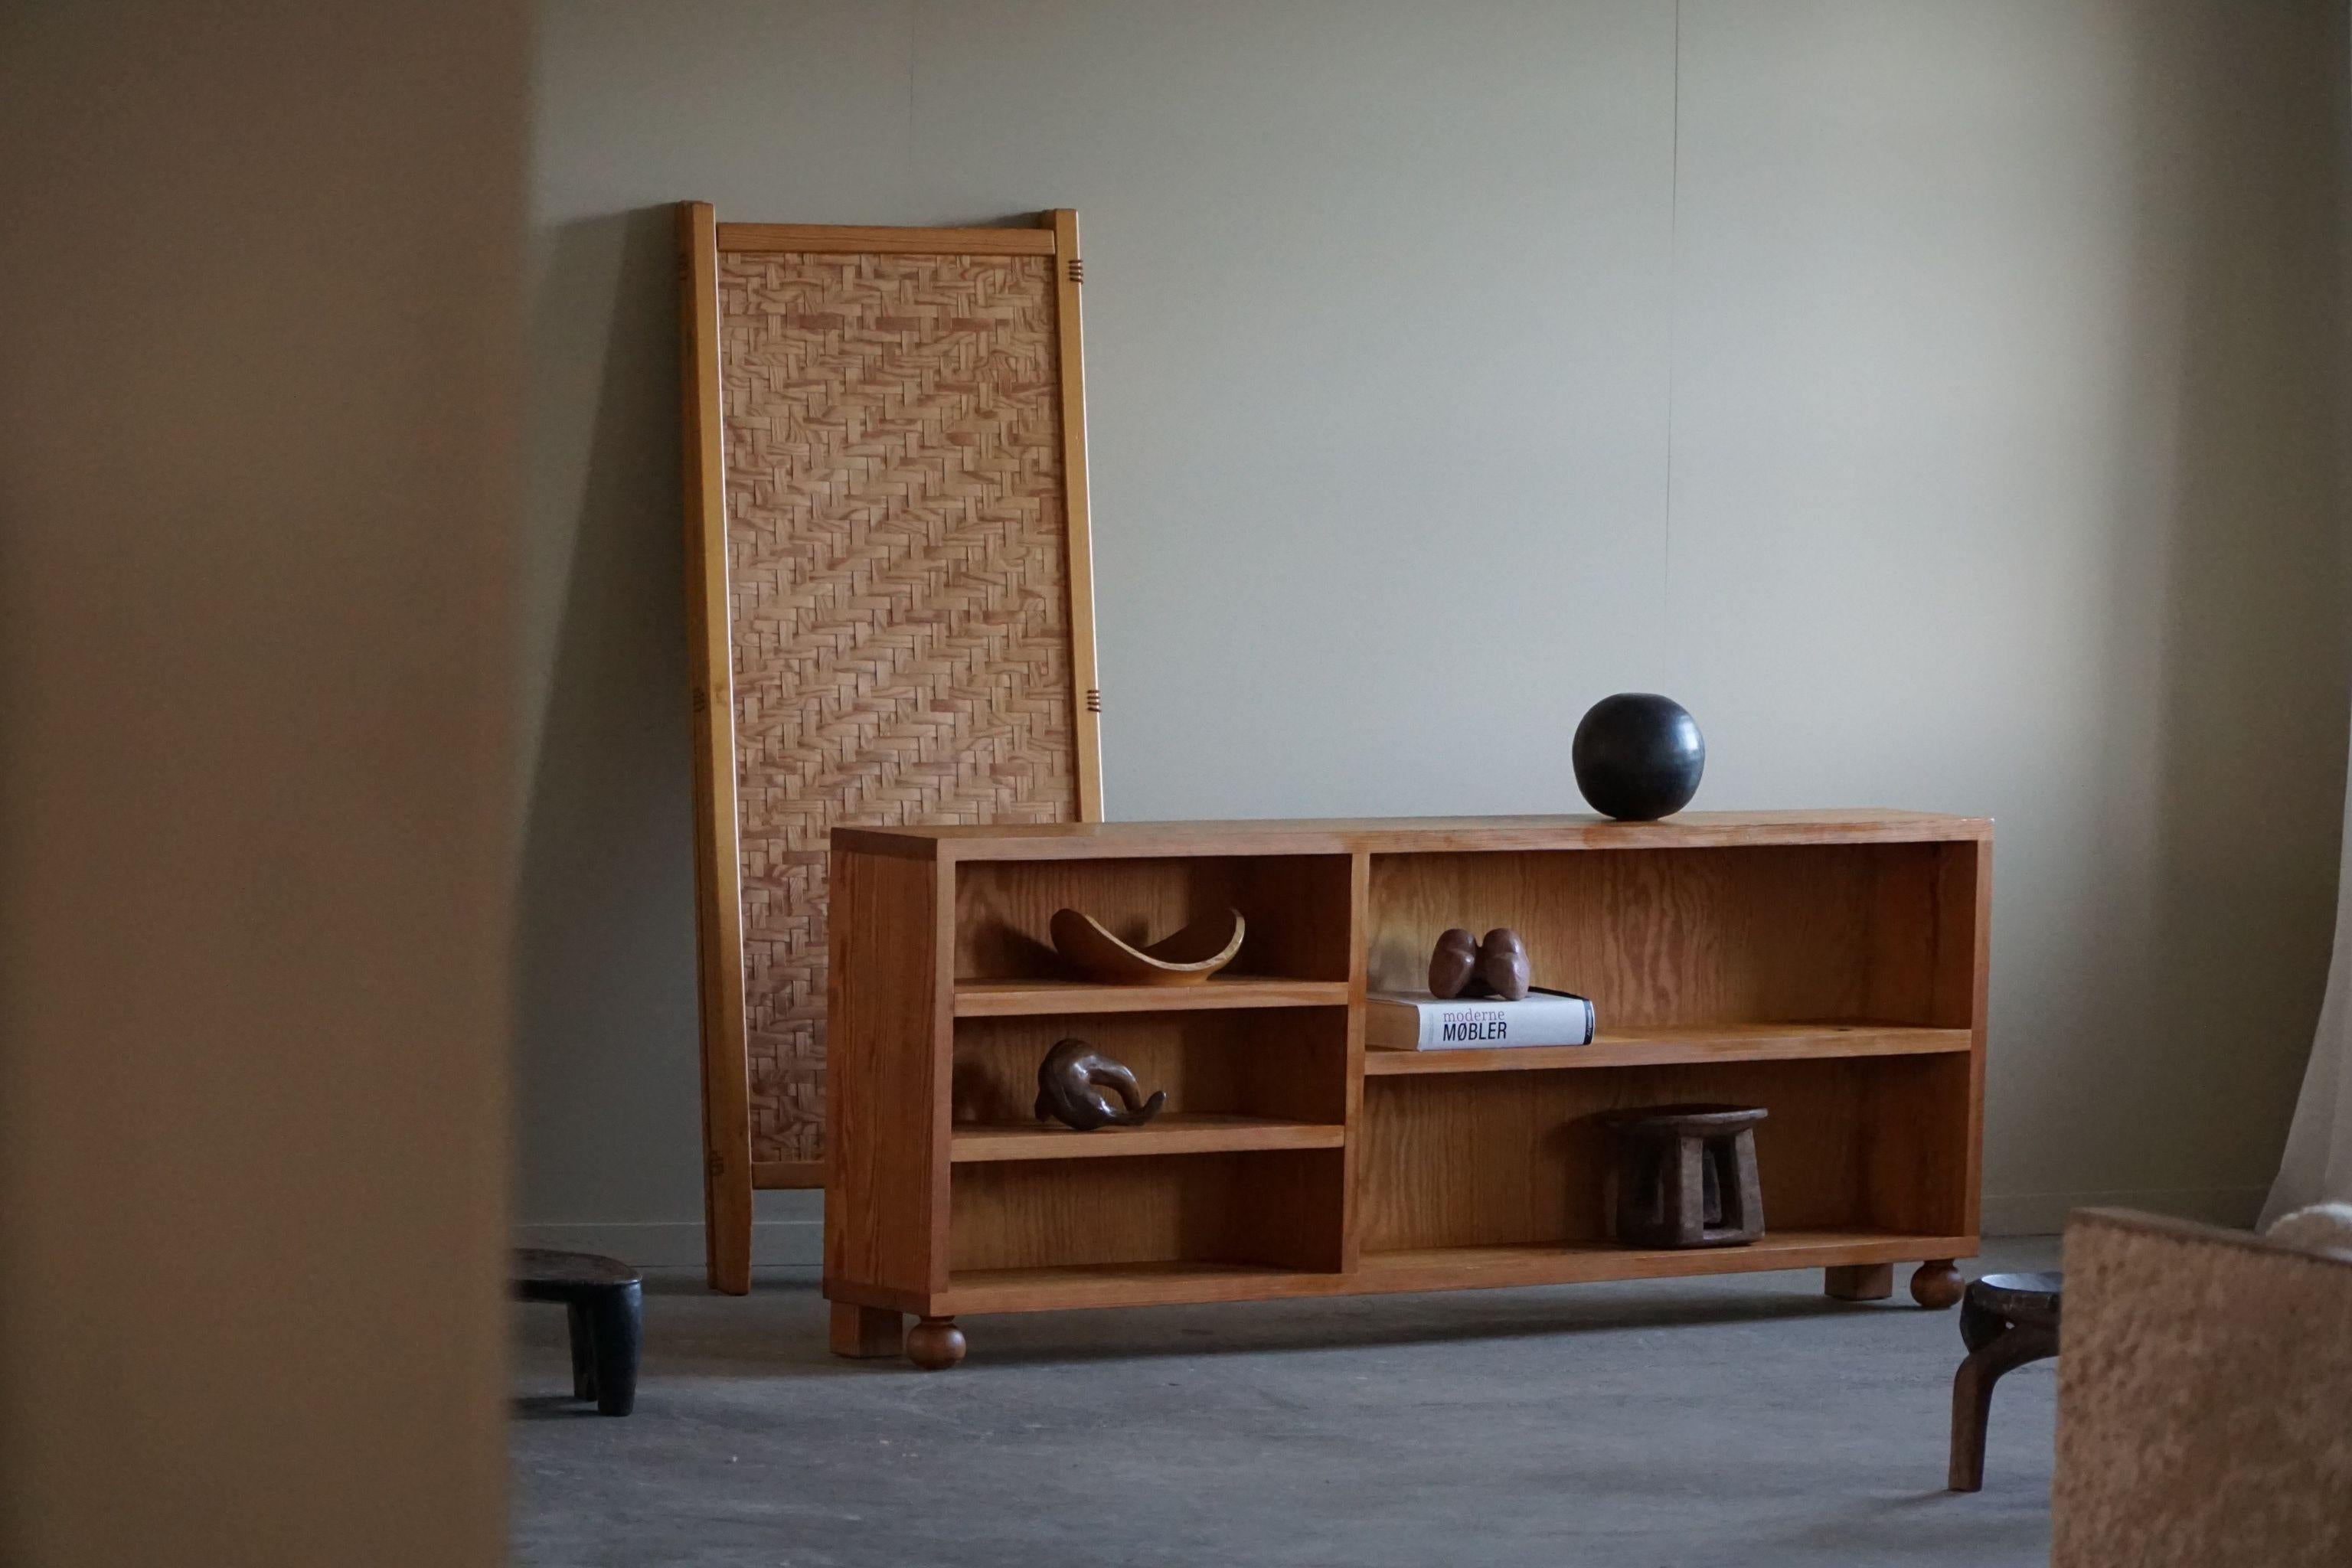 L'étagère rectangulaire en pin massif, fabriquée par un ébéniste danois dans les années 1970, est un meuble intemporel et fonctionnel. Caractérisée par des lignes épurées et un design minimaliste, cette étagère incarne l'esthétique emblématique de